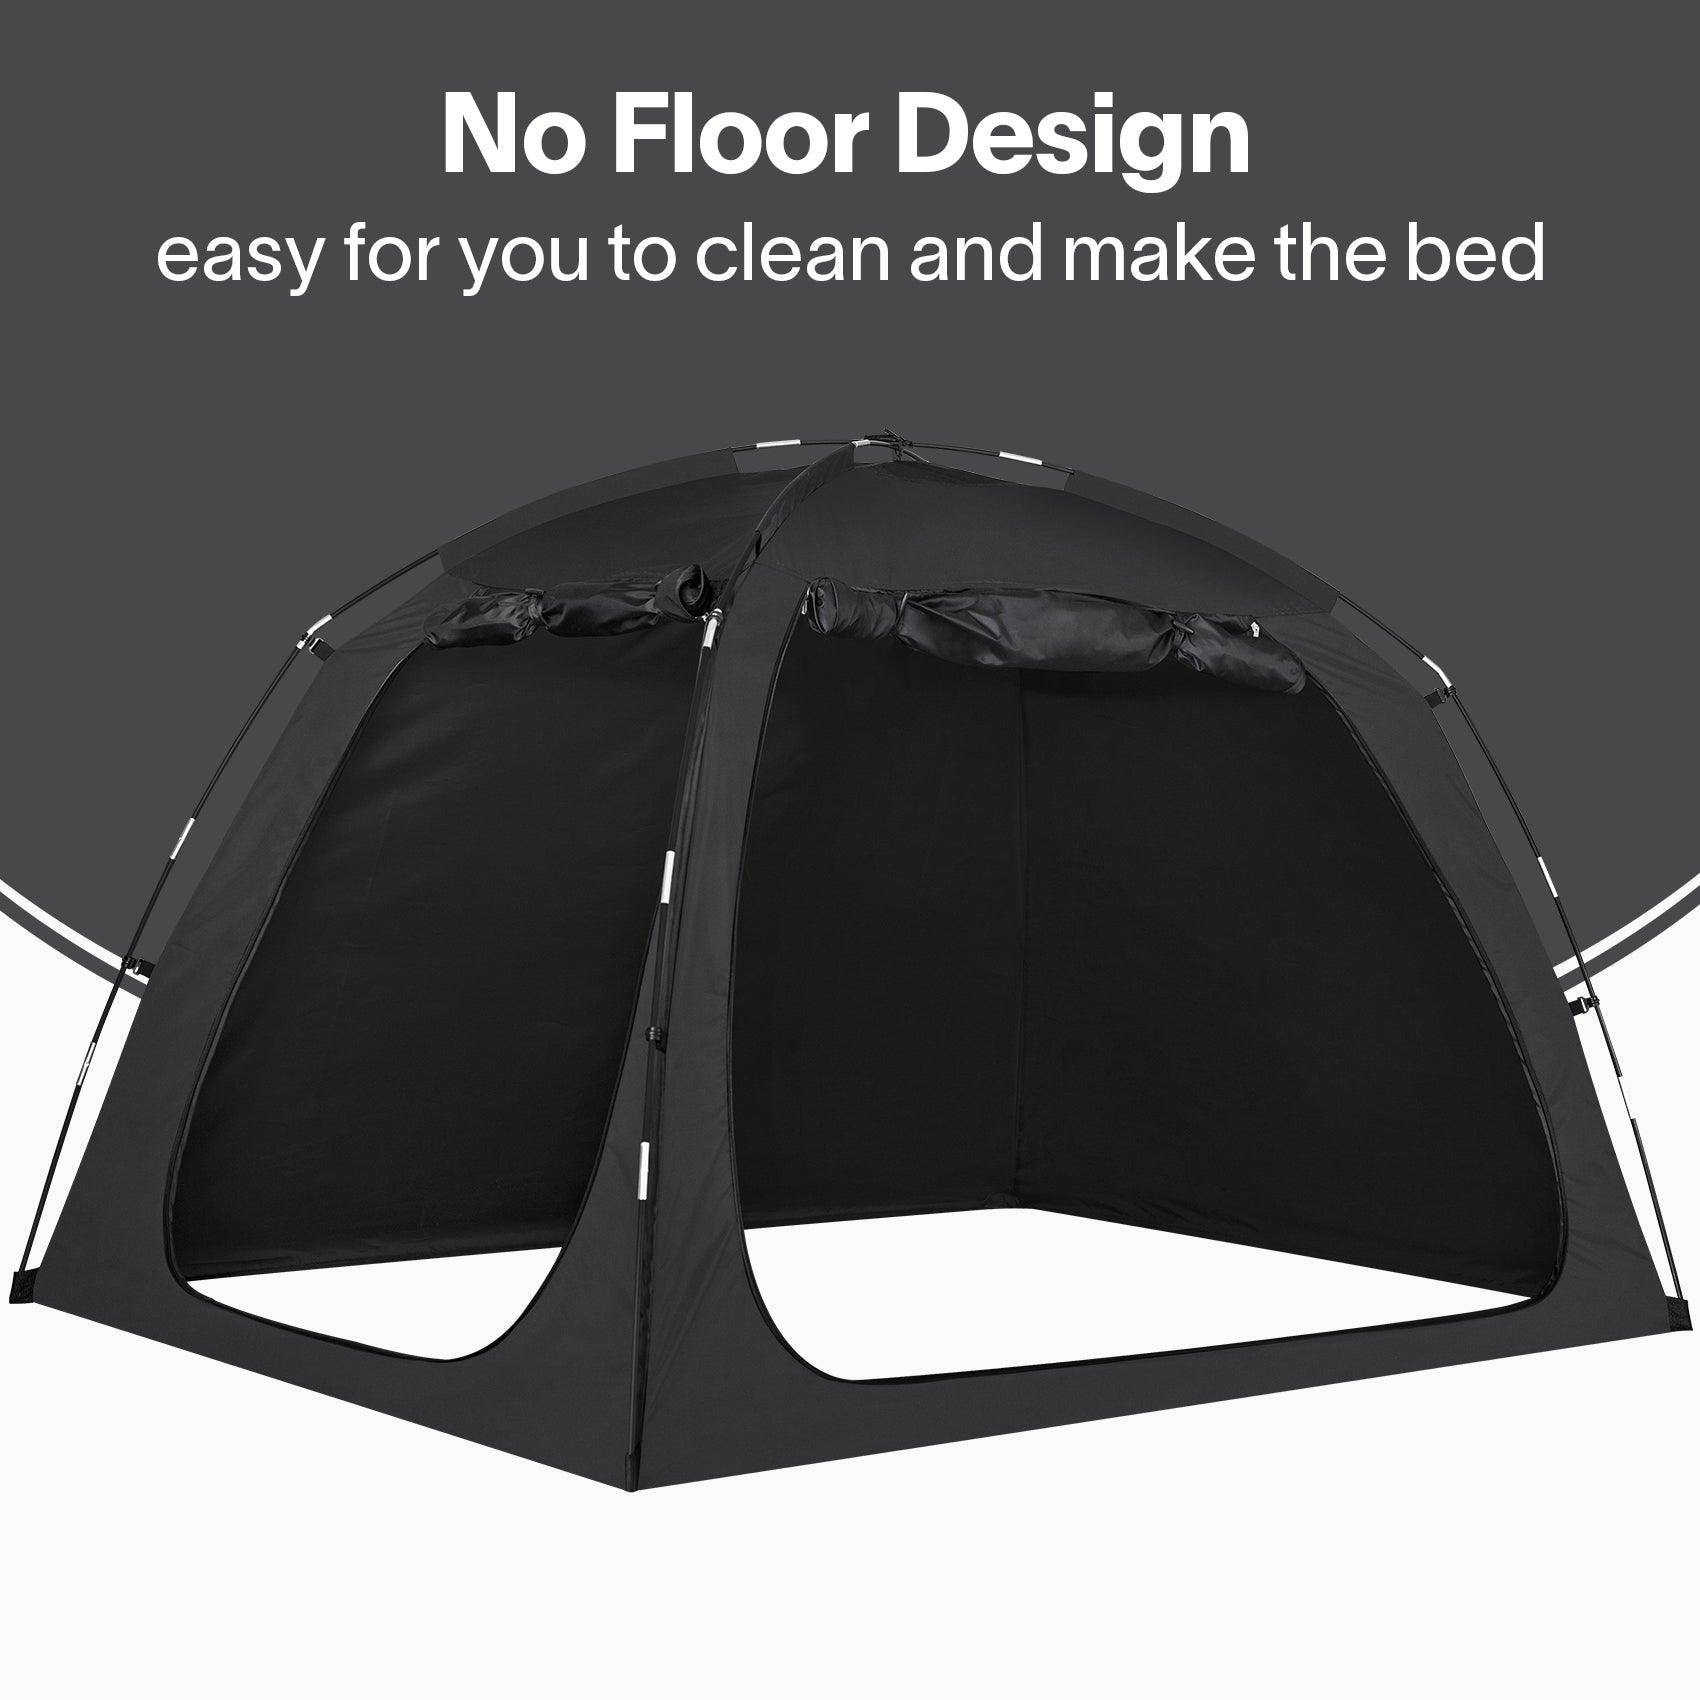 EighteenTek bed tent No Floor Design